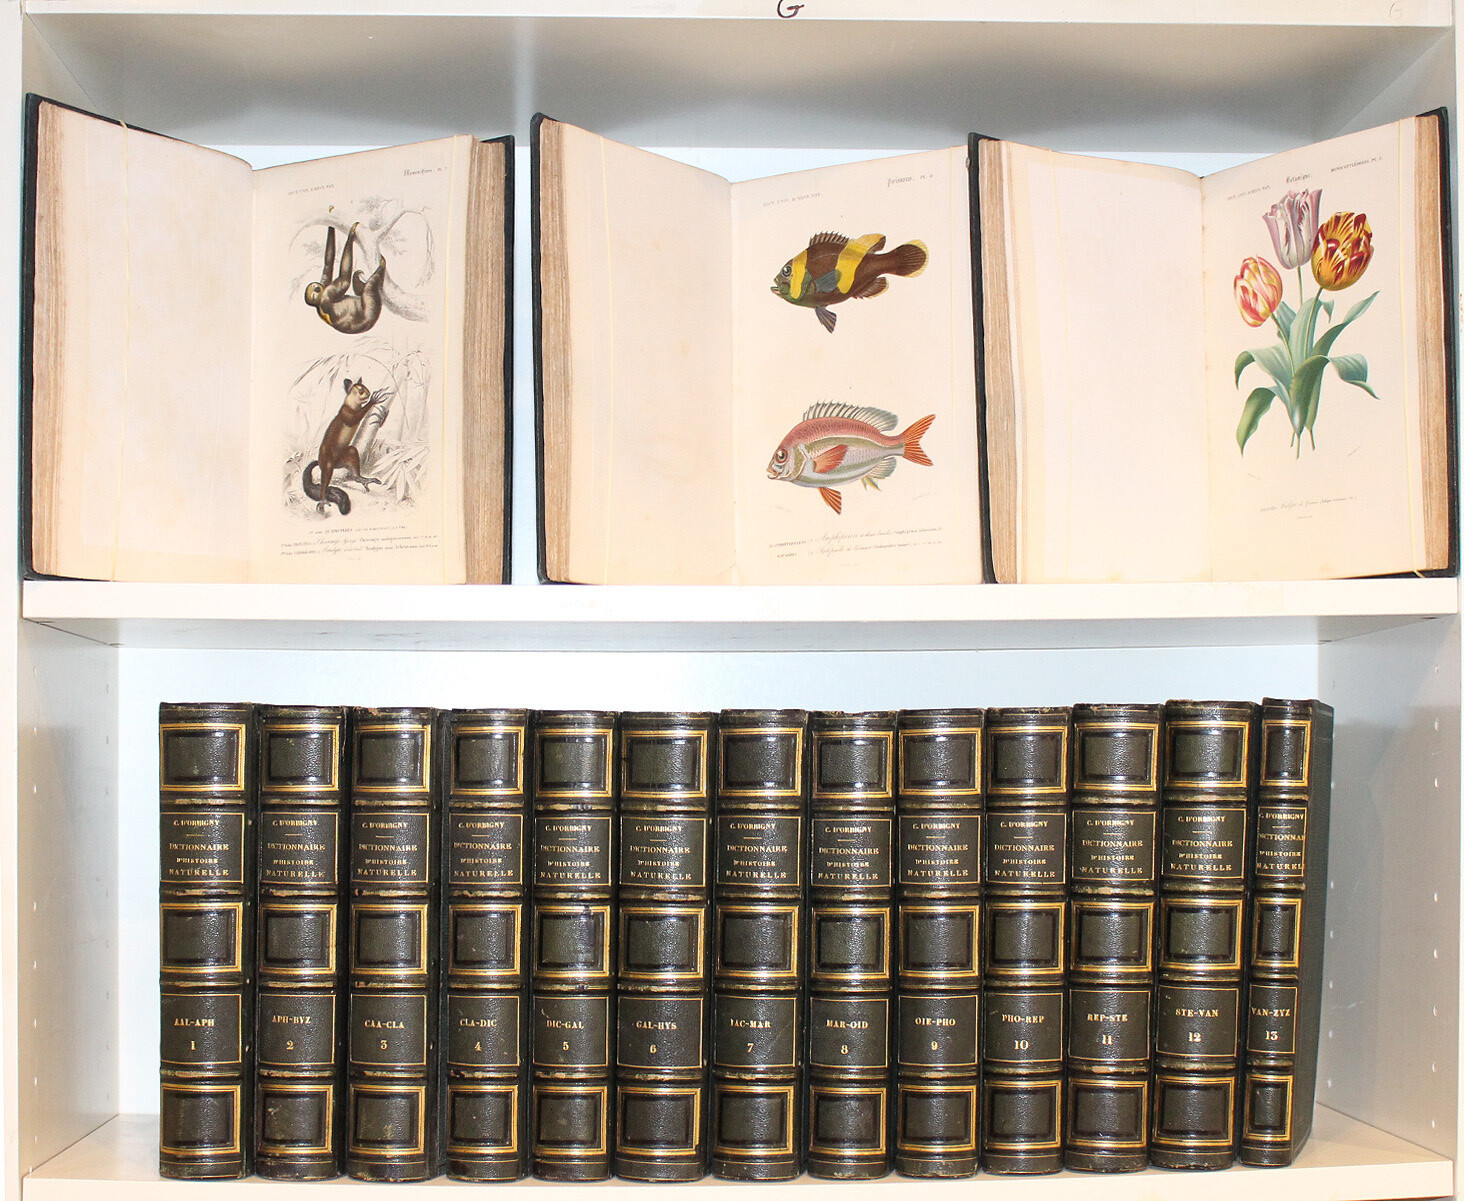 ORBIGNY, Charles d'.- Dictionnaire universel d'histoire naturelle, 1849. 16 volumes, plus de 250 planches coloriées.